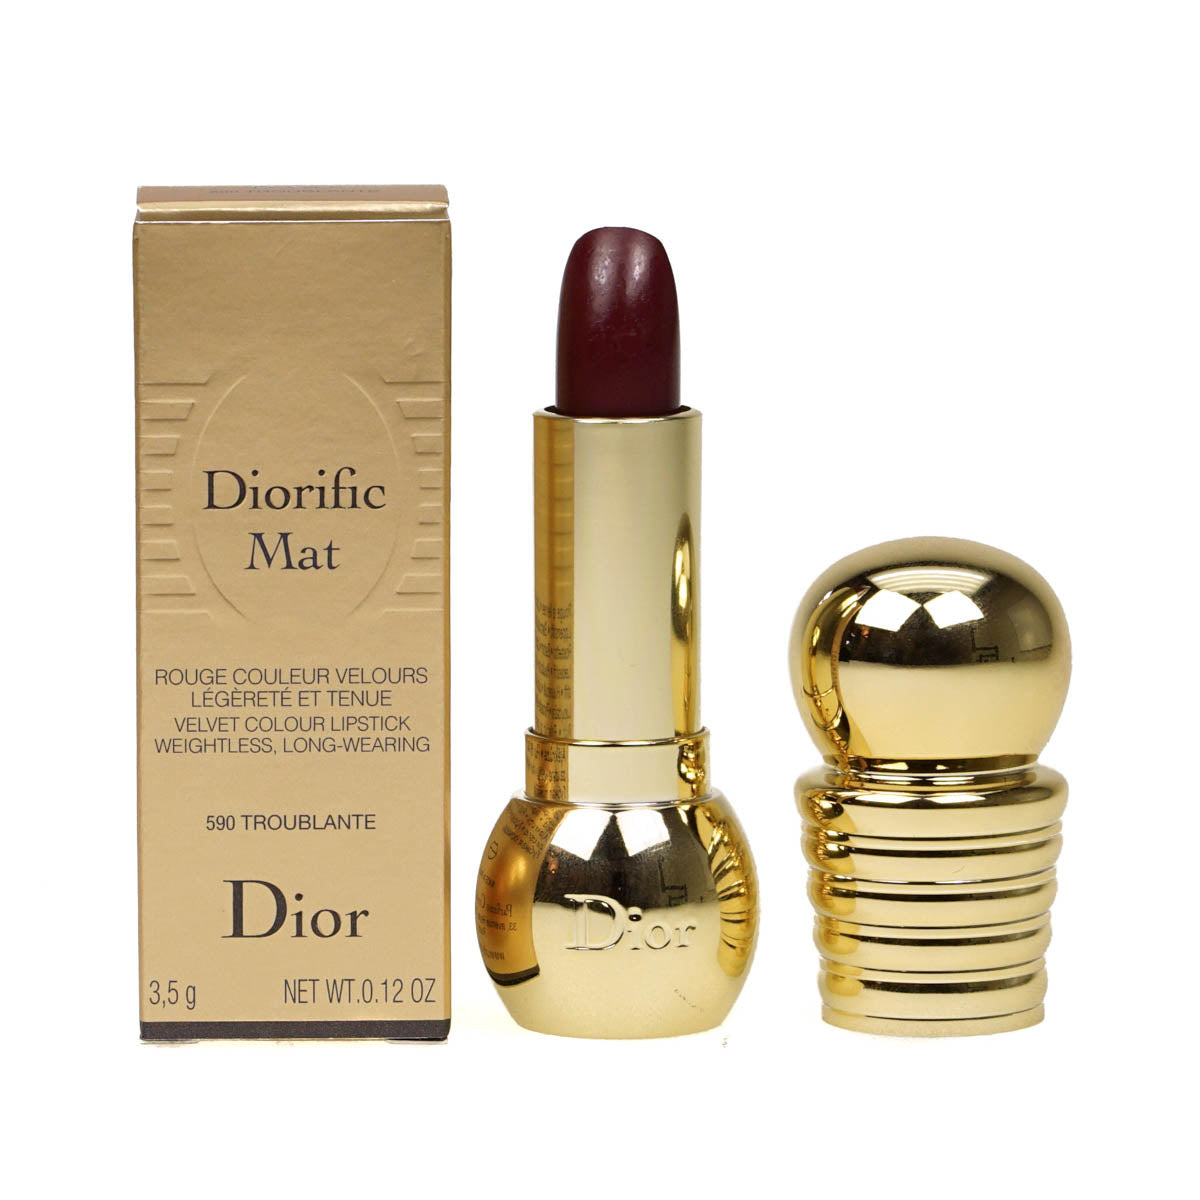 Dior Diorific Mat Lipstick 590 Troublante